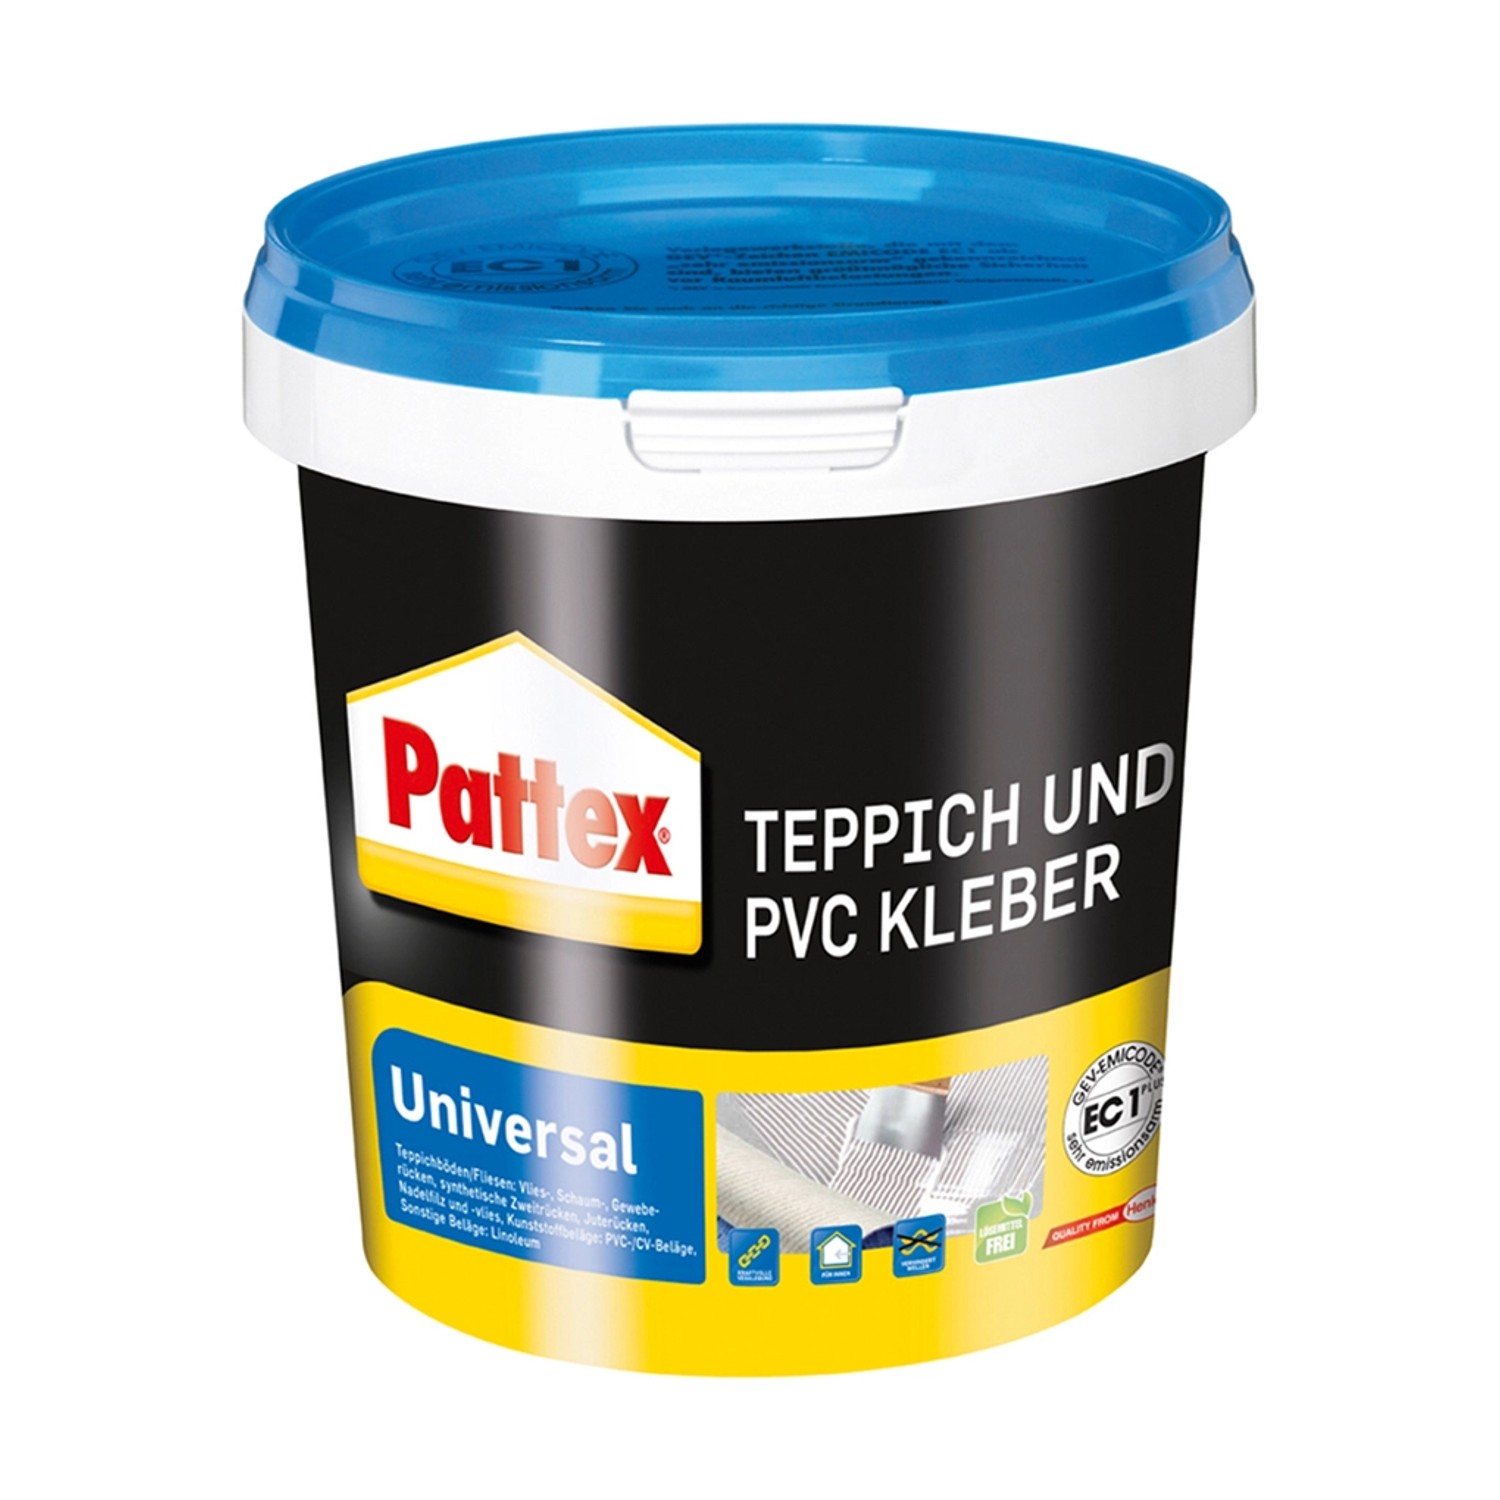 Pattex Teppich und PVC Kleber Universal 1 kg Dose